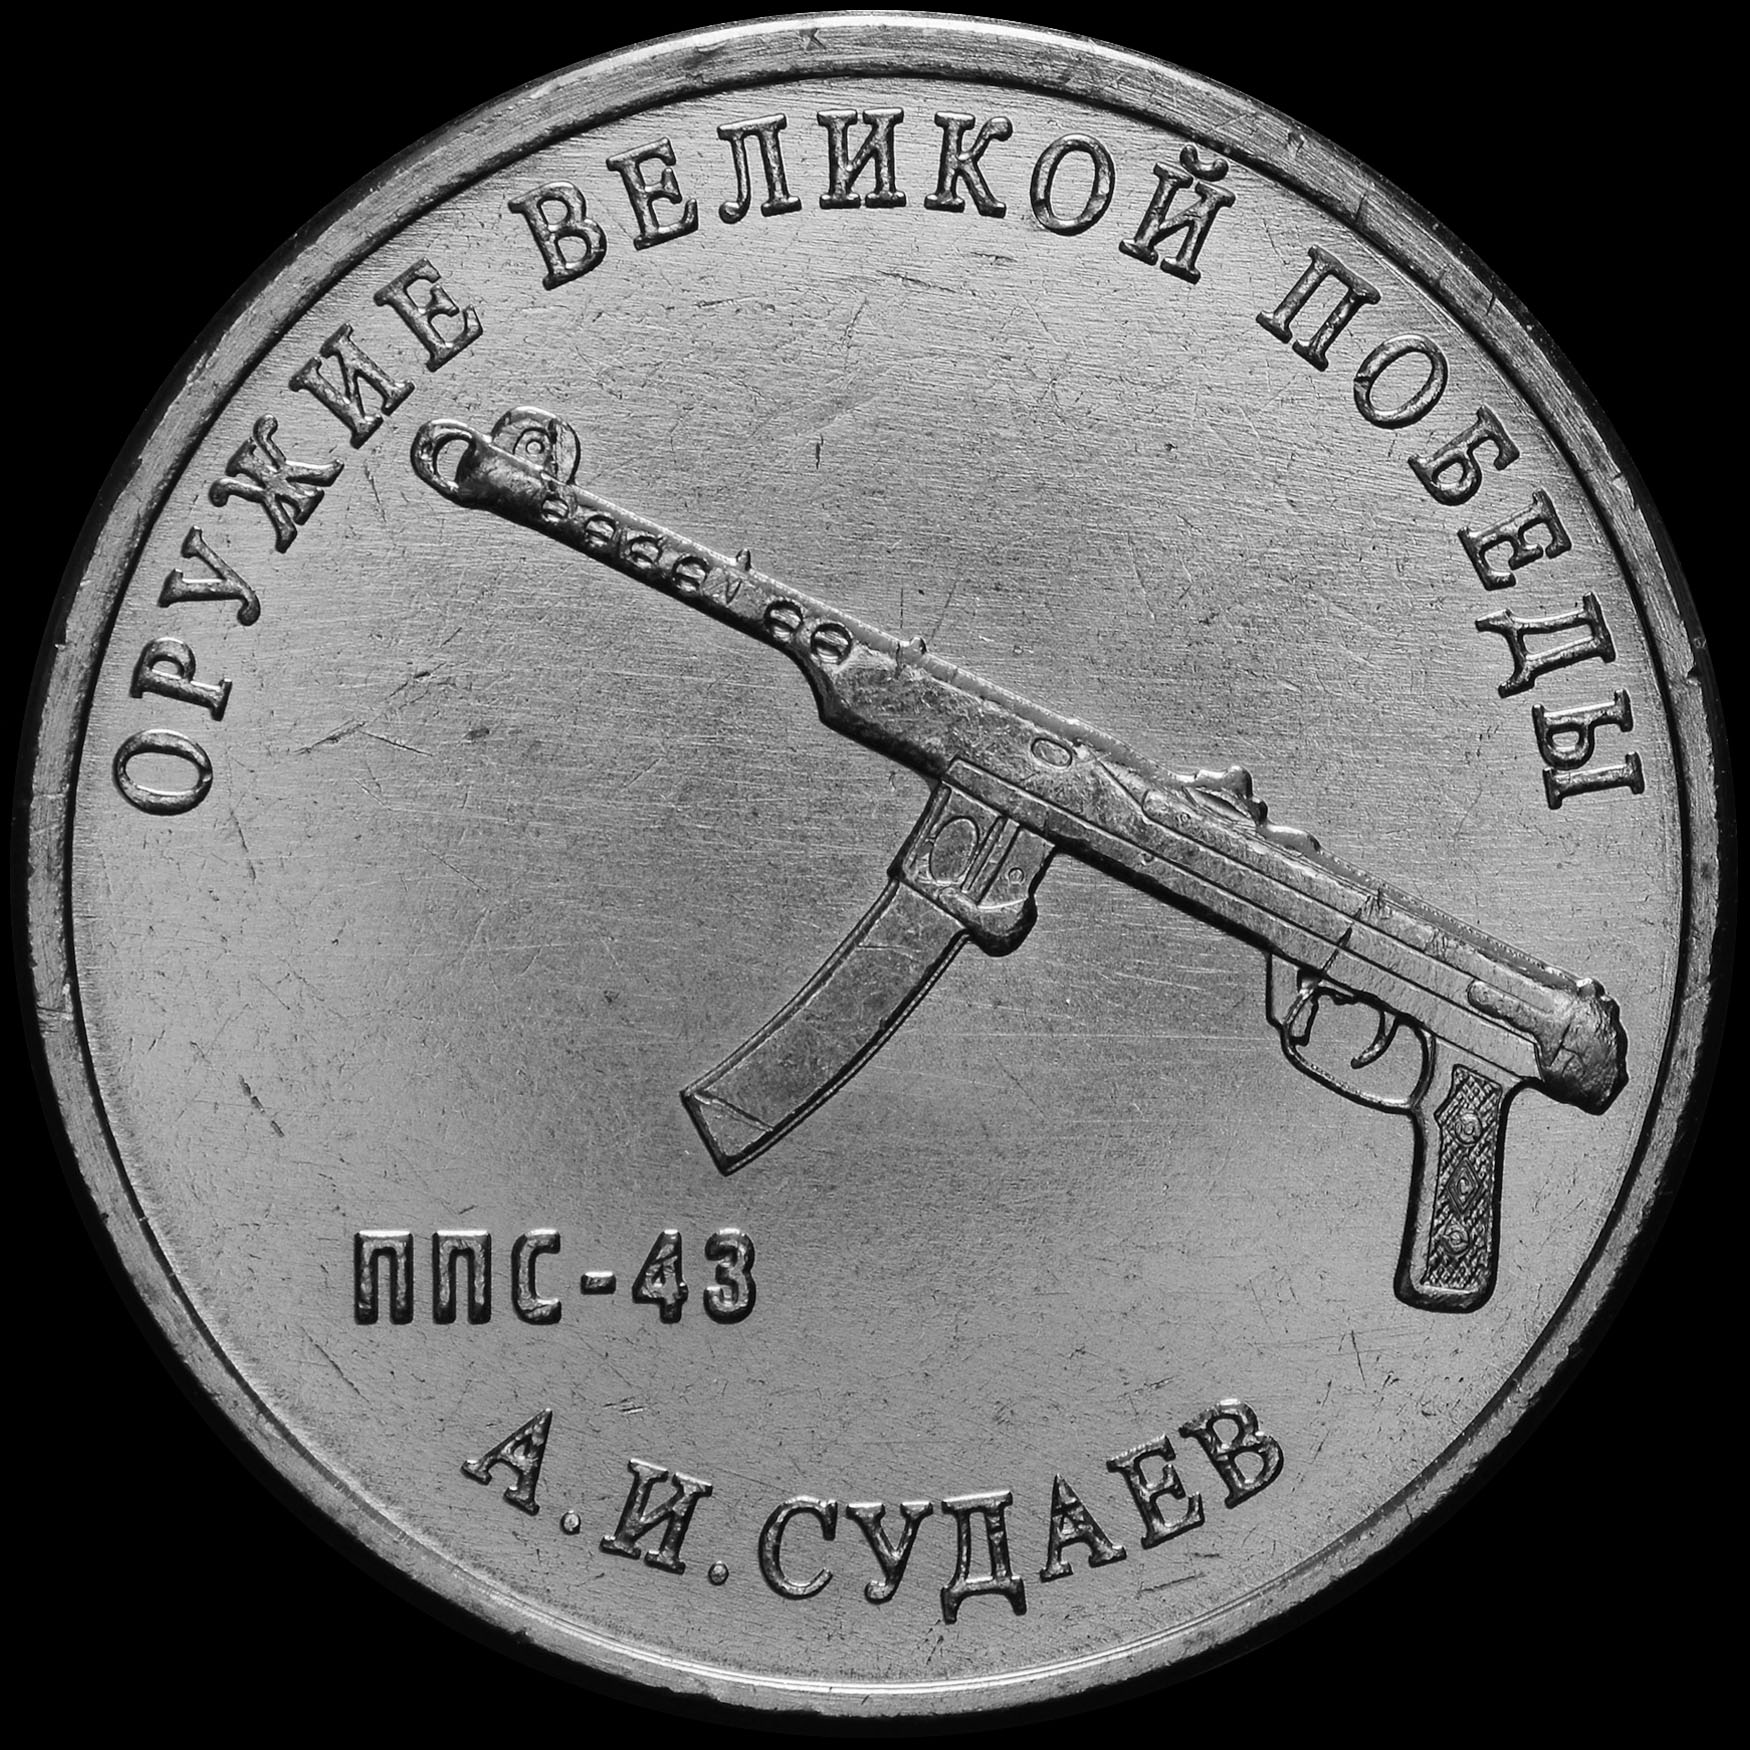 25 Рублей Судаев. Памятные 25 рублей